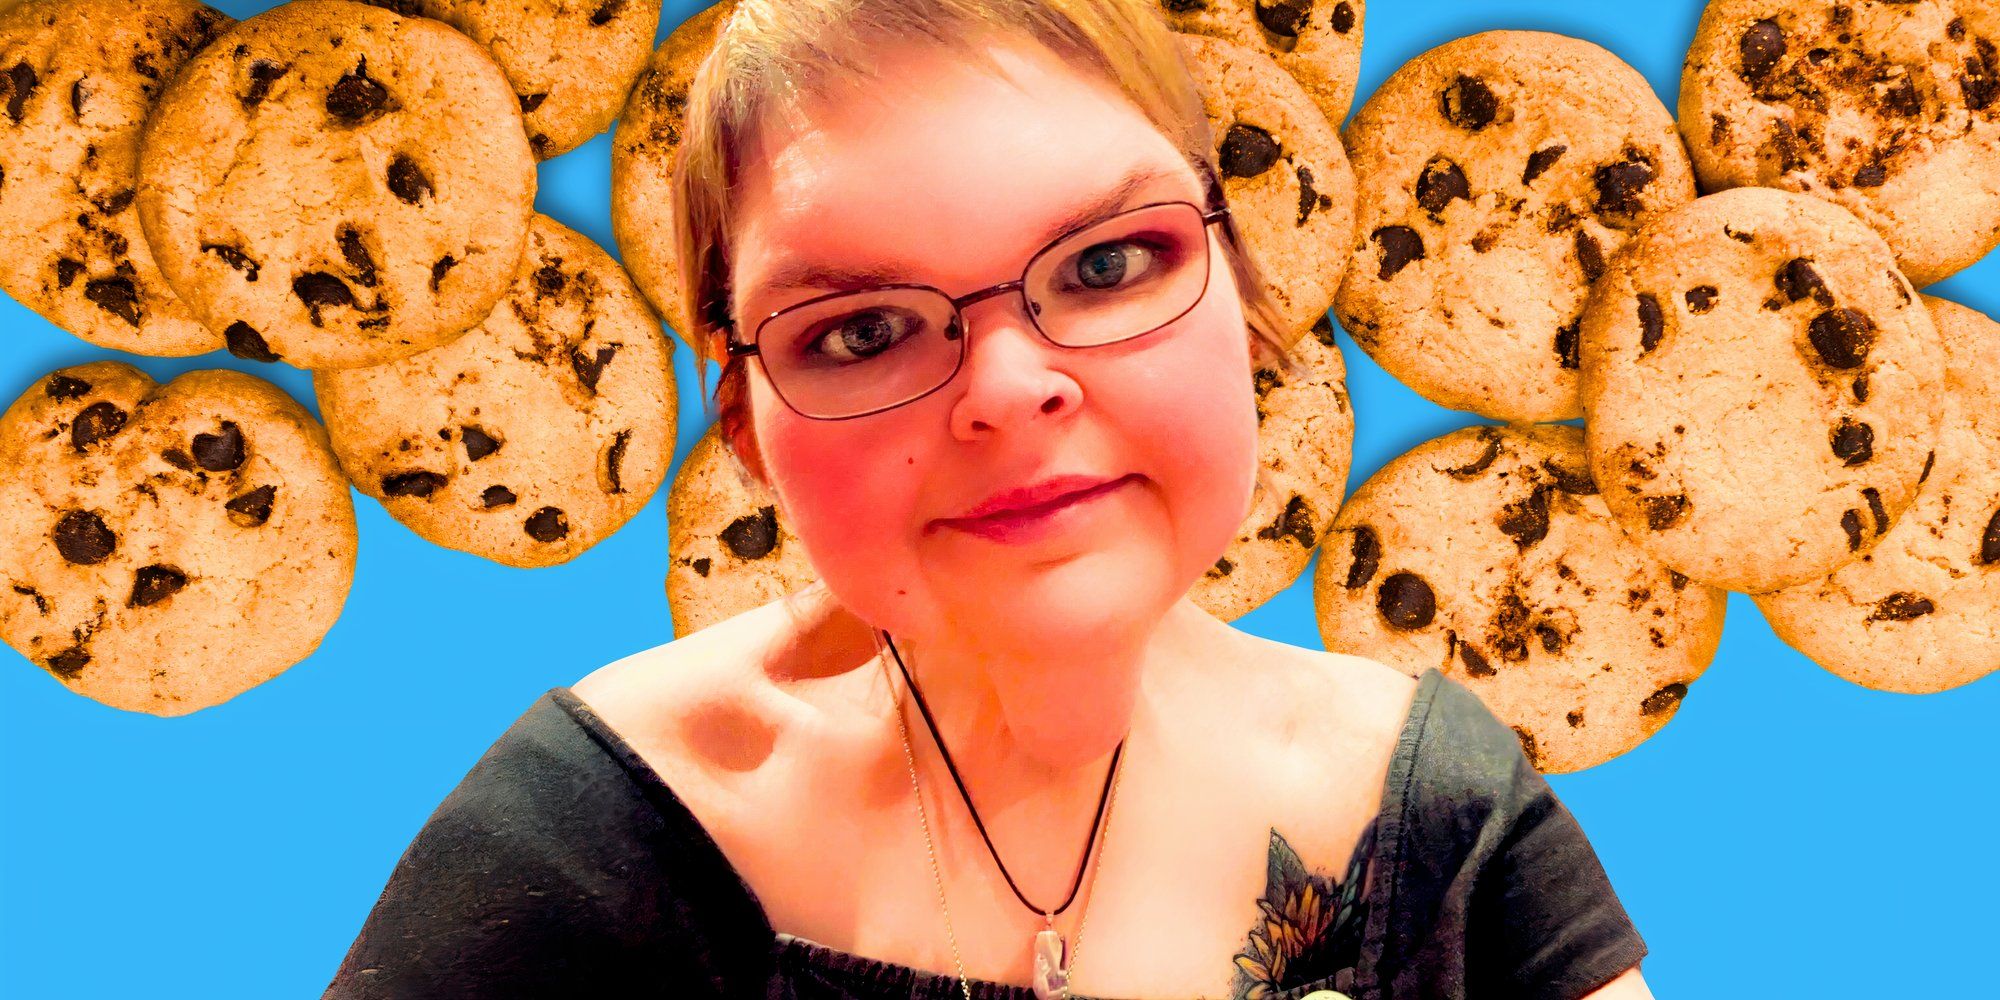 Hermanas de 1000 libras: "C es de galleta": TikToks dulces de Tammy después de perder peso (y otras publicaciones deliciosas)